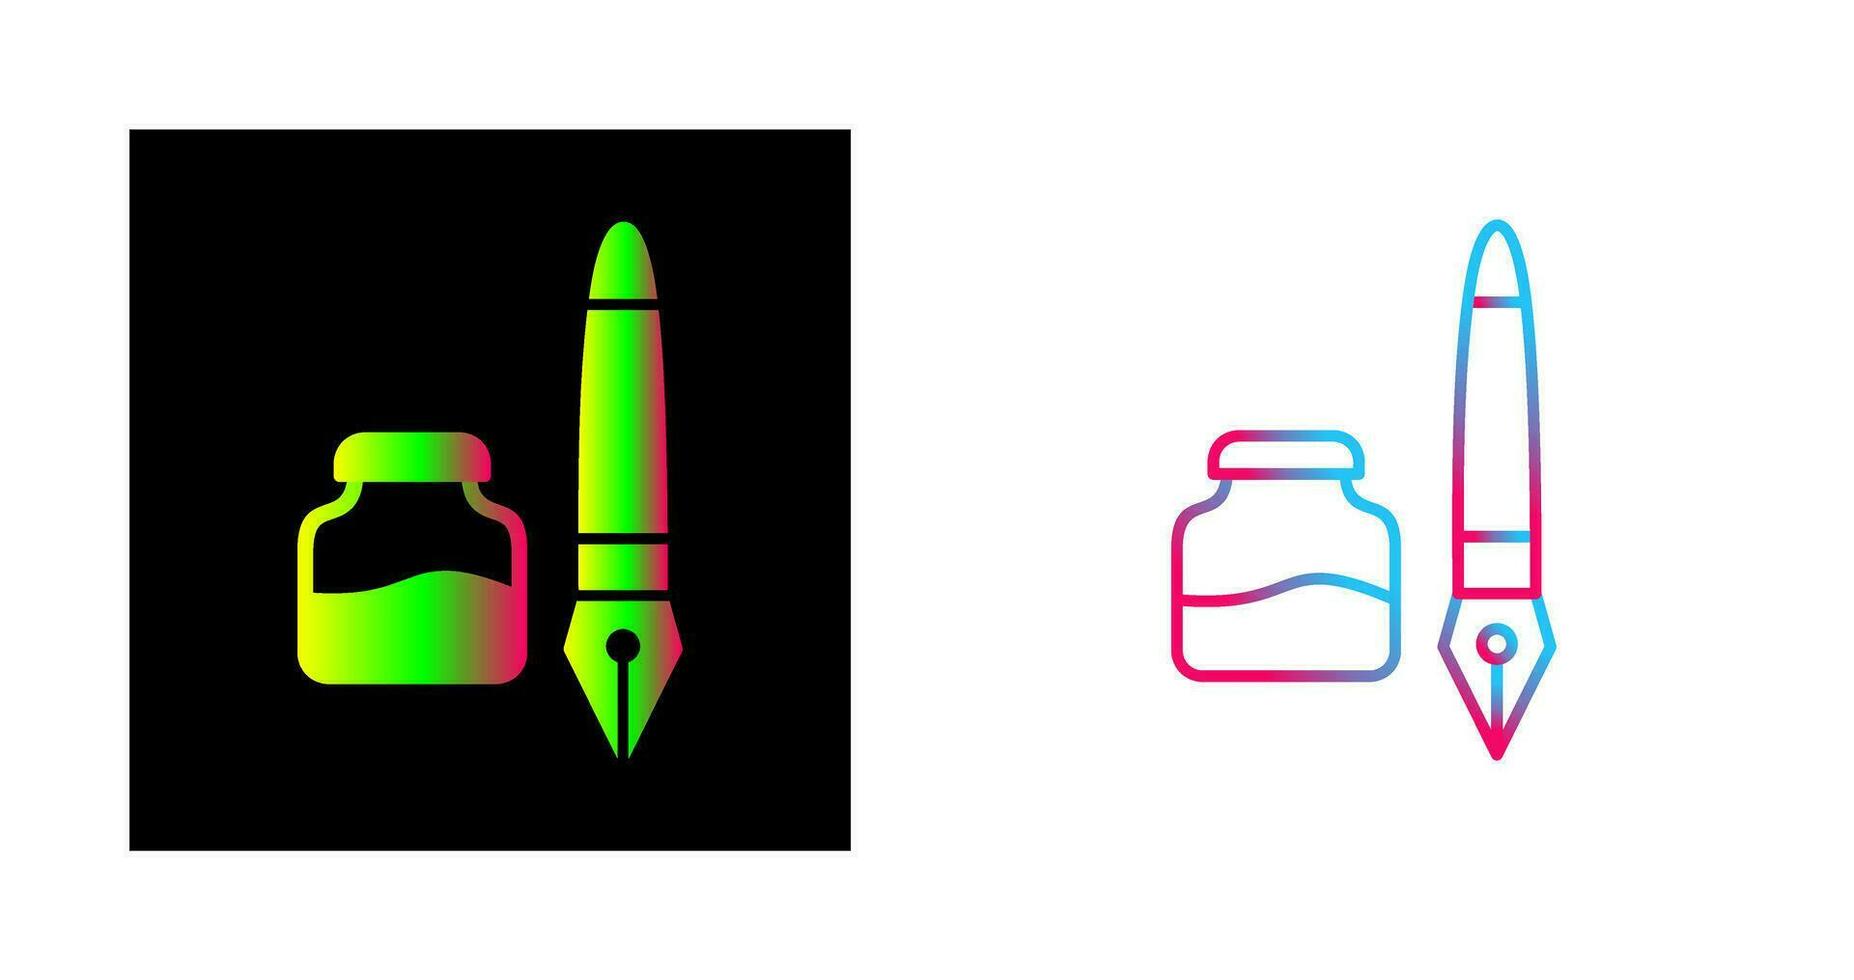 inkt en pen vector icoon